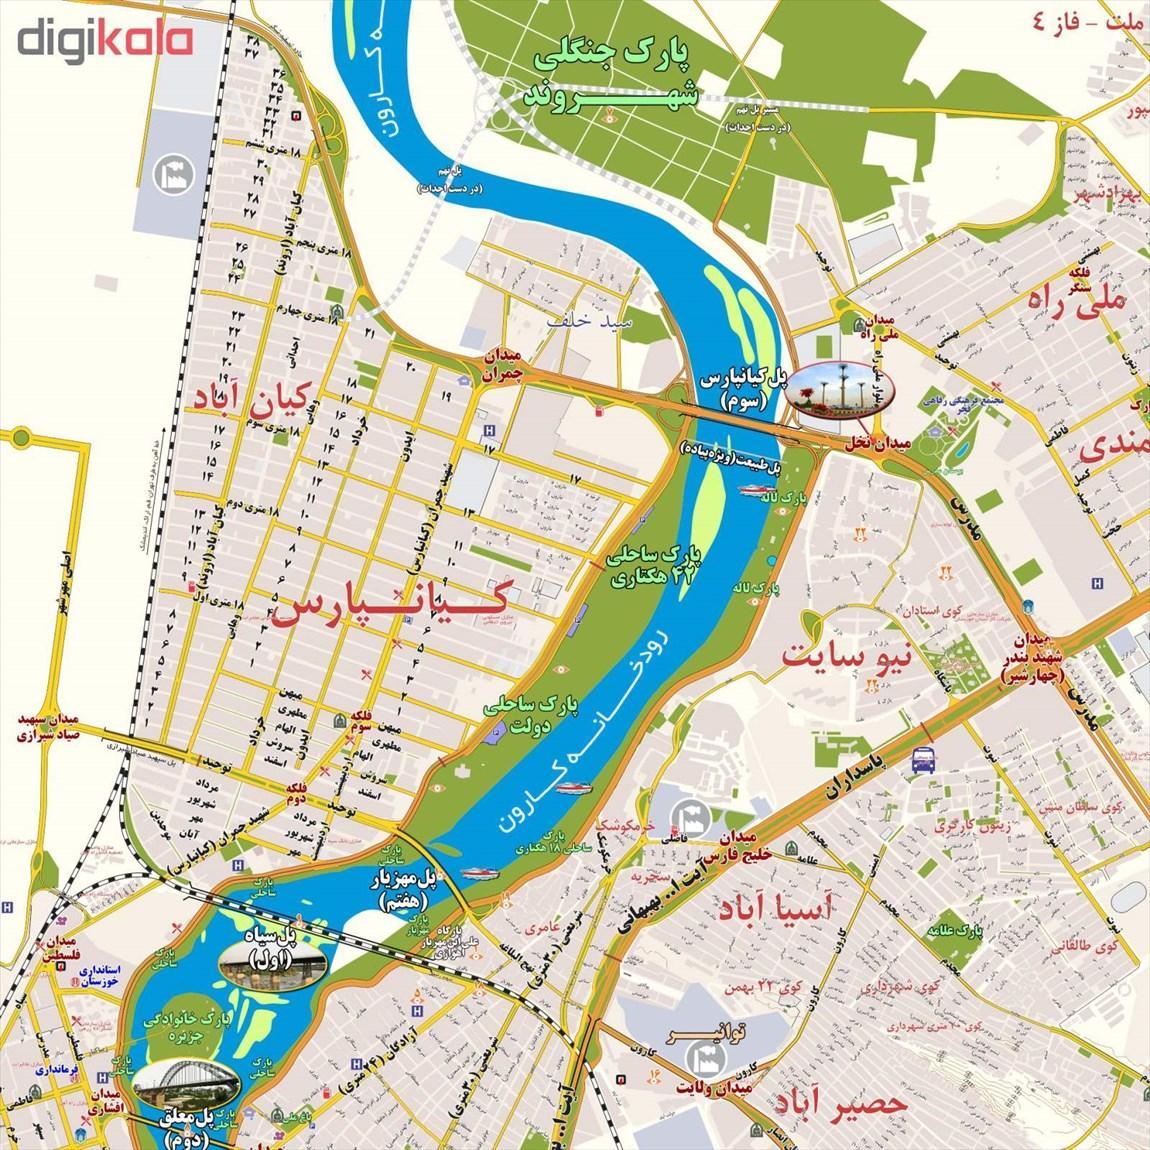 تاریخچه و نقشه جامع شهر اهواز